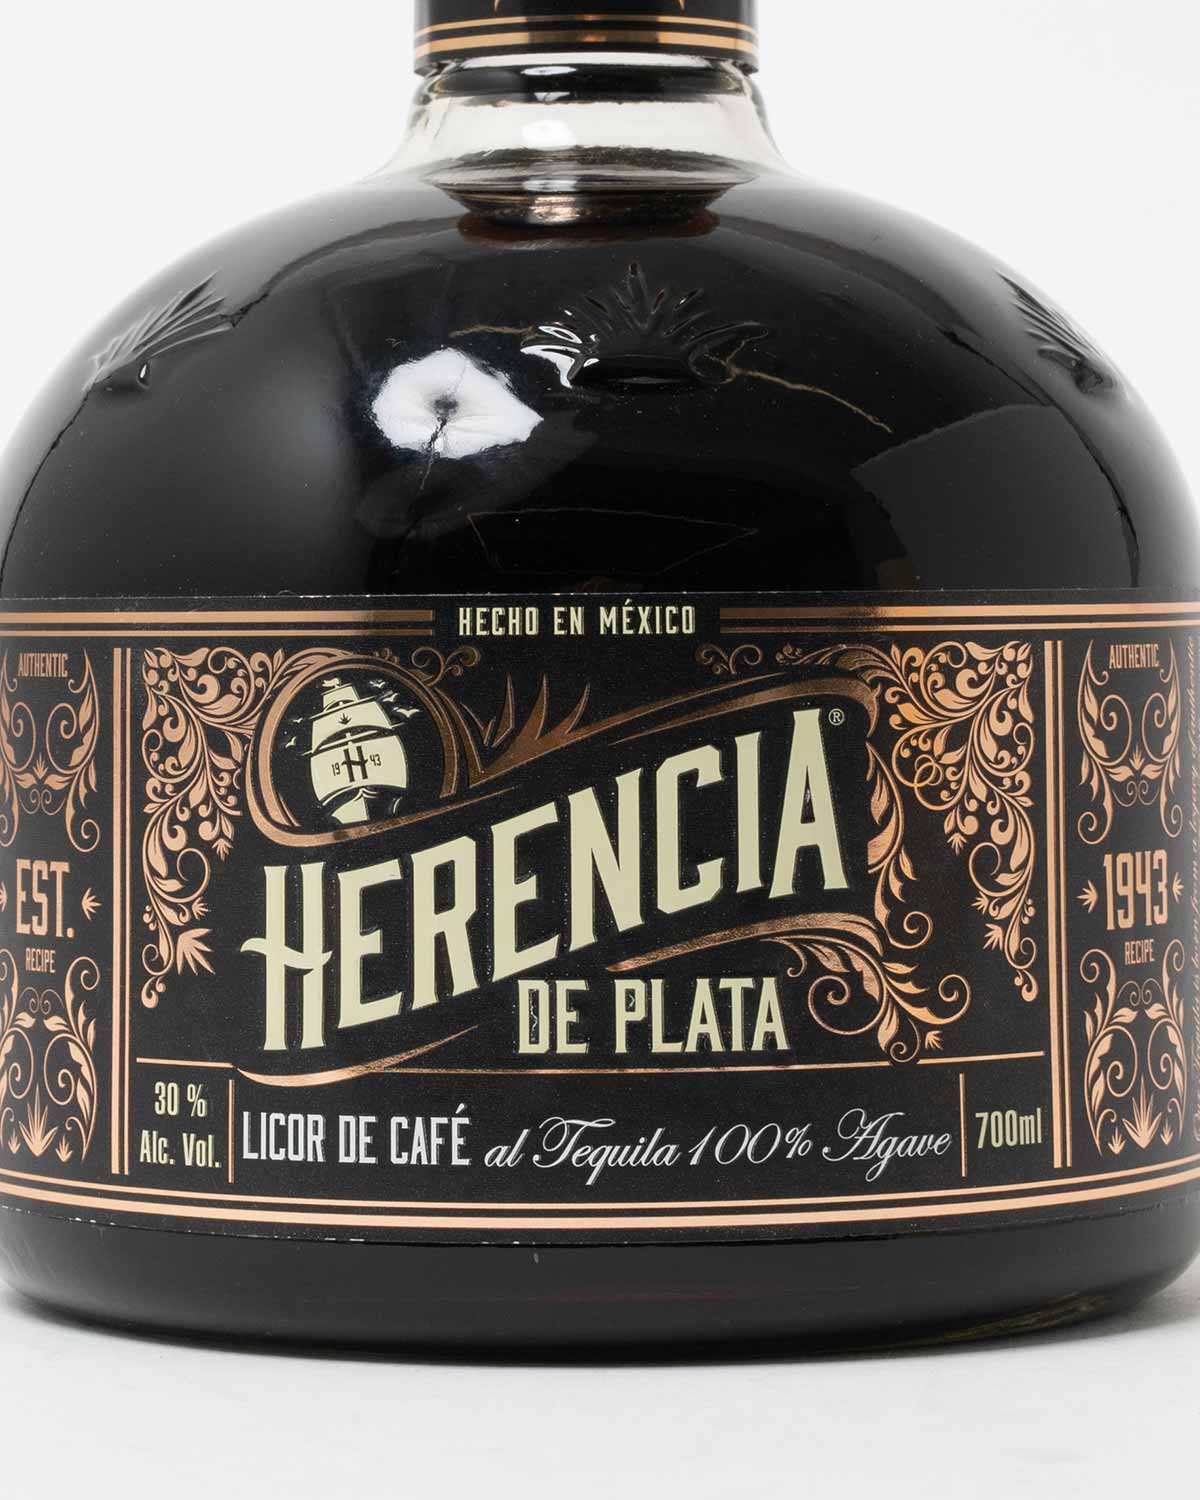 HERENCIA DE PLATA LICOR DE CAFE 700ml